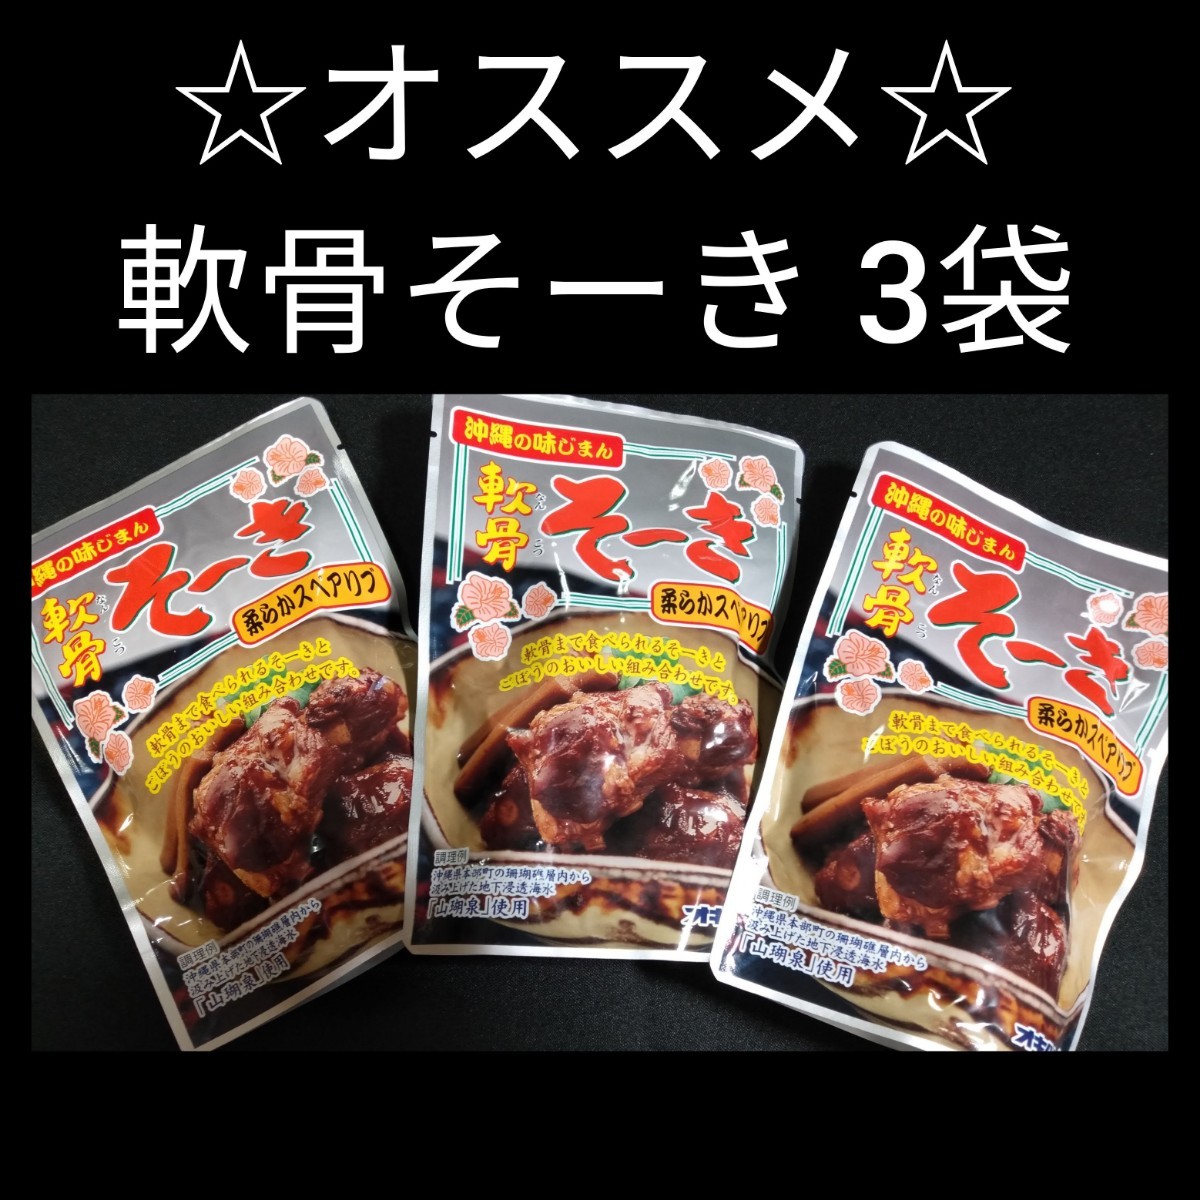 [ супер-скидка ]..so-ki165g×3 пакет мягкость рёбрышки бесплатная доставка oki ветчина so-ki Okinawa соба топпинг Okinawa . земля производство 